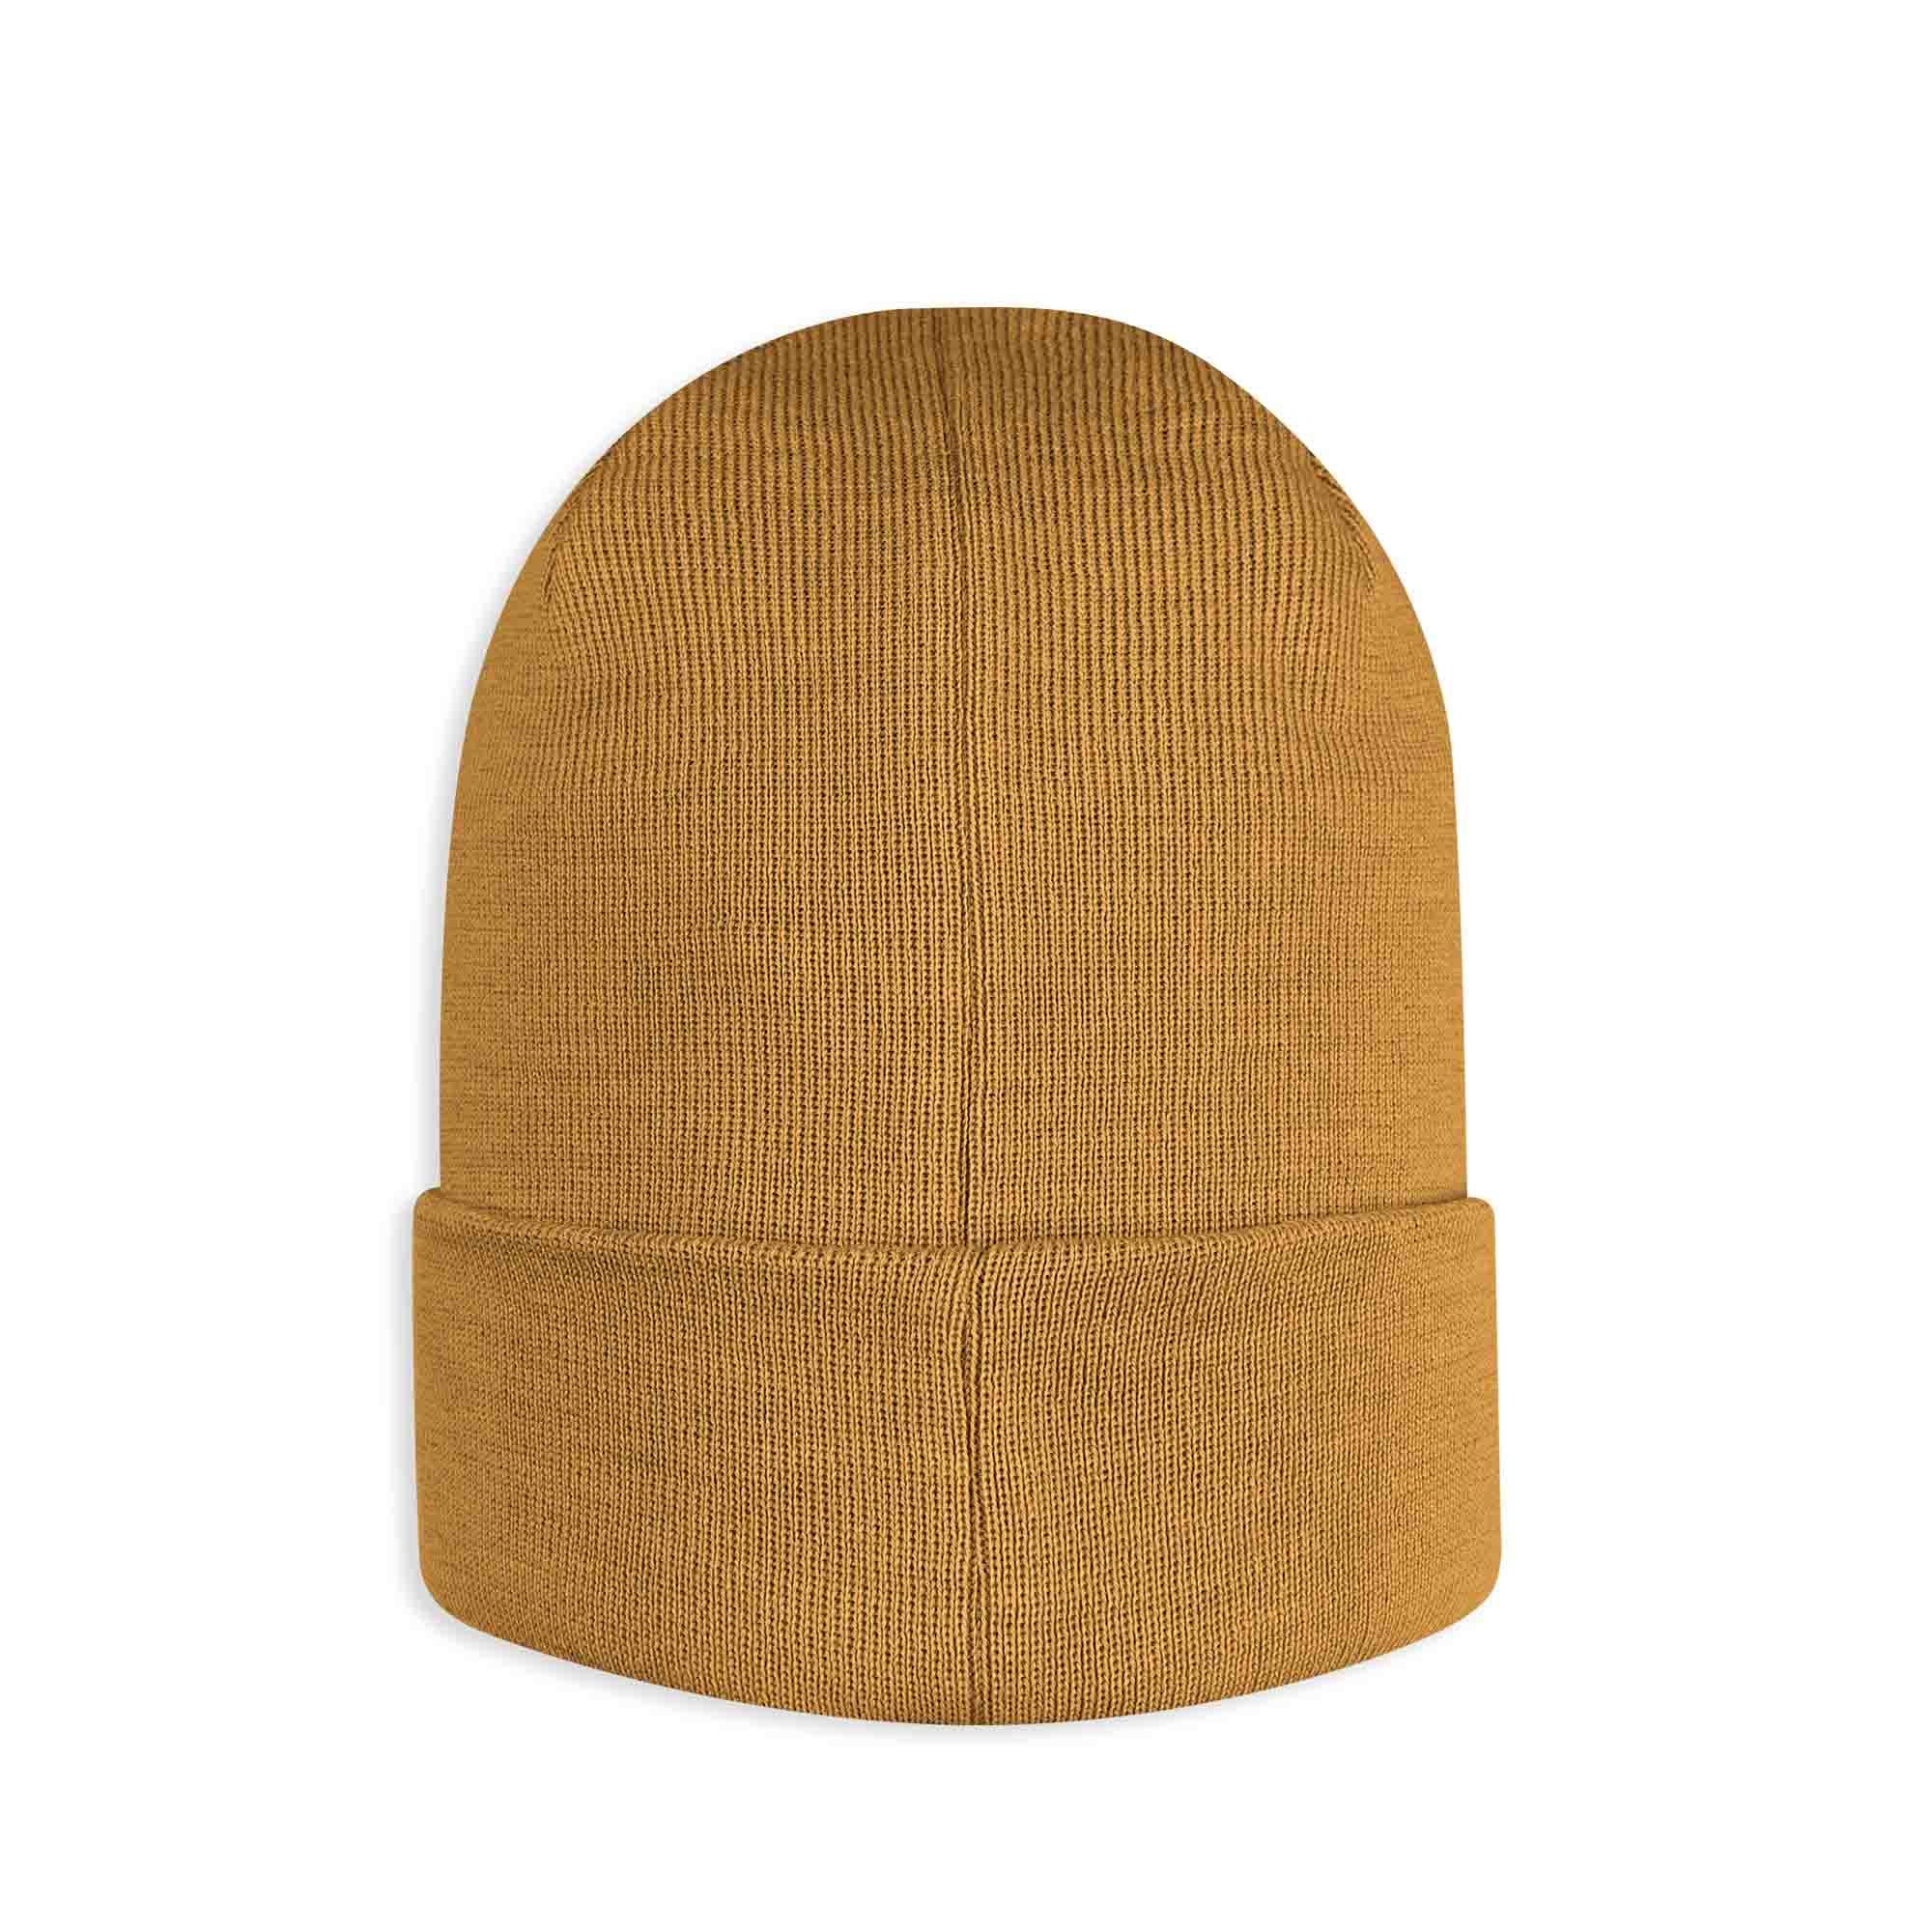 Musztardowa czapka z wełny merino o drobnym splocie